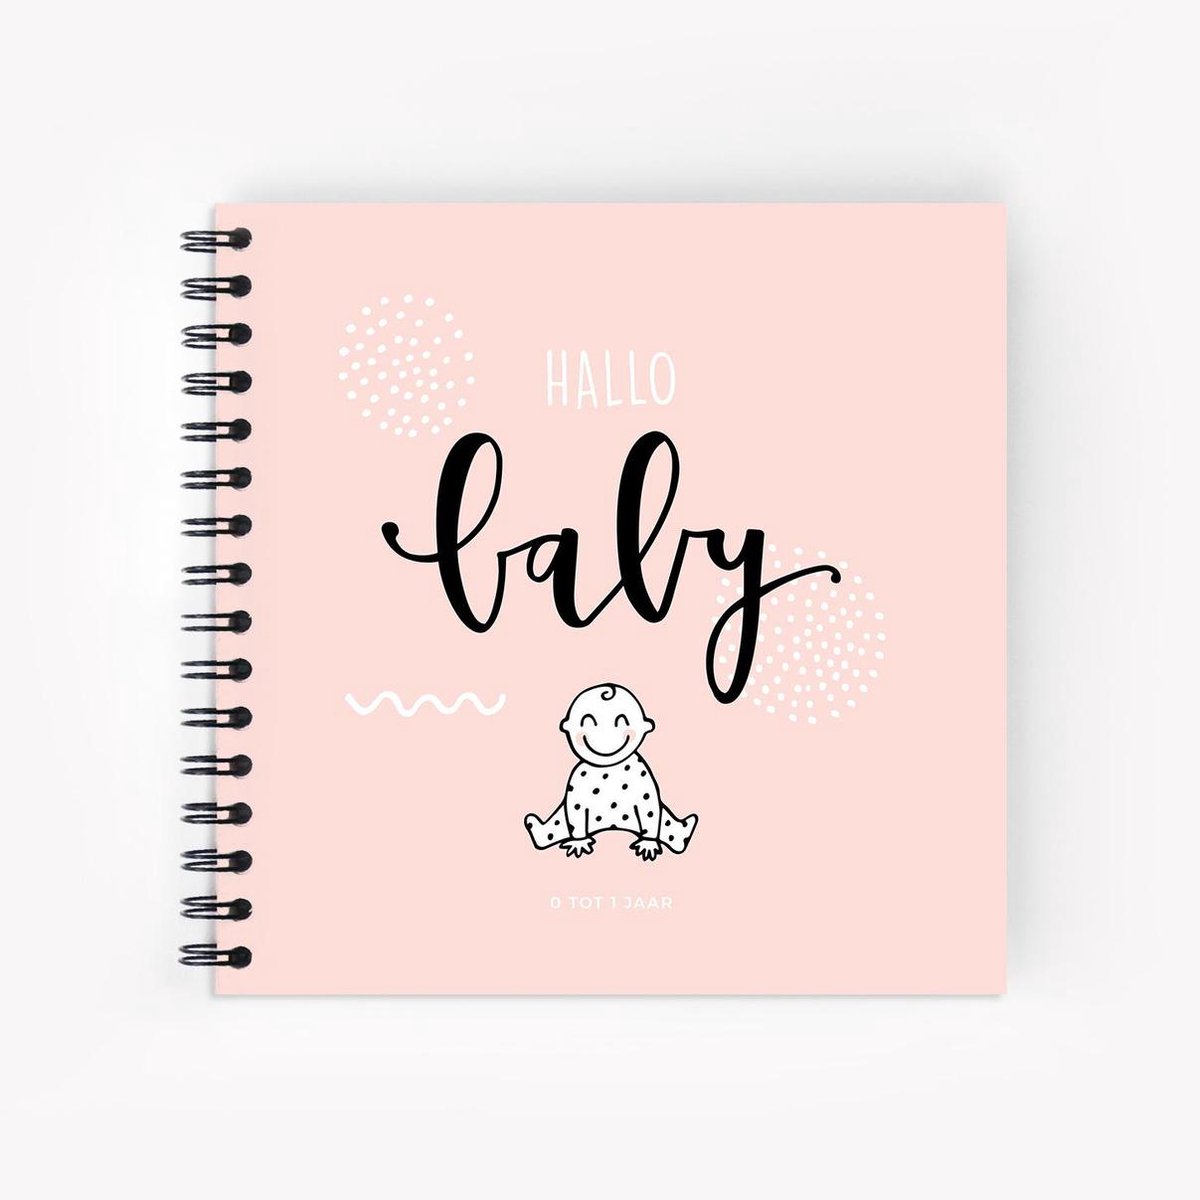 Hallo babyboek • Invulboek voor het eerste jaar van jouw baby (roze)